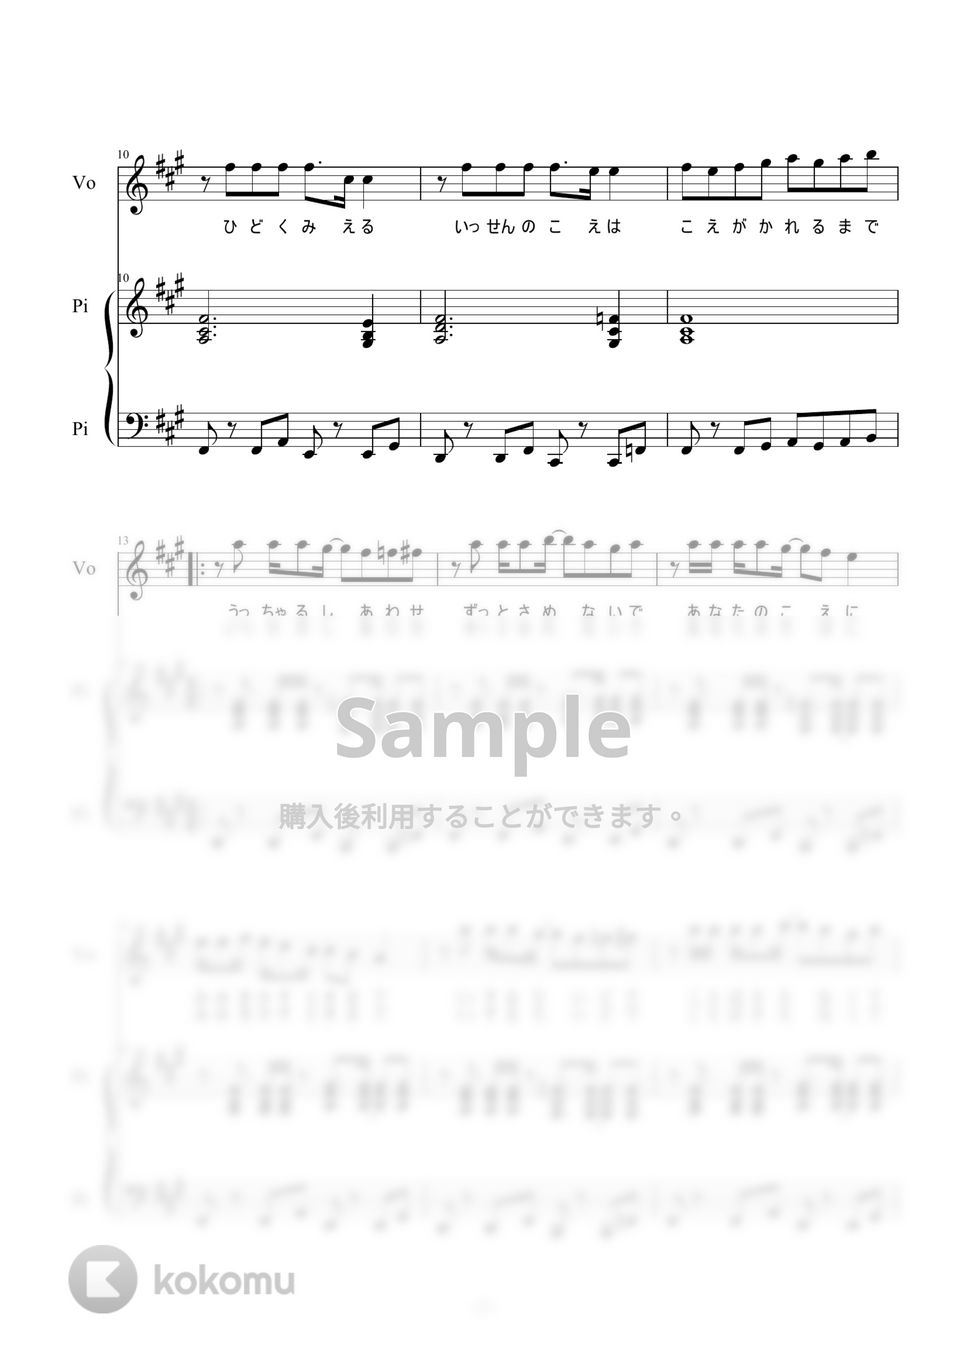 Kanaria - 酔いどれ知らず (ピアノ弾き語り) by 二次元楽譜製作所